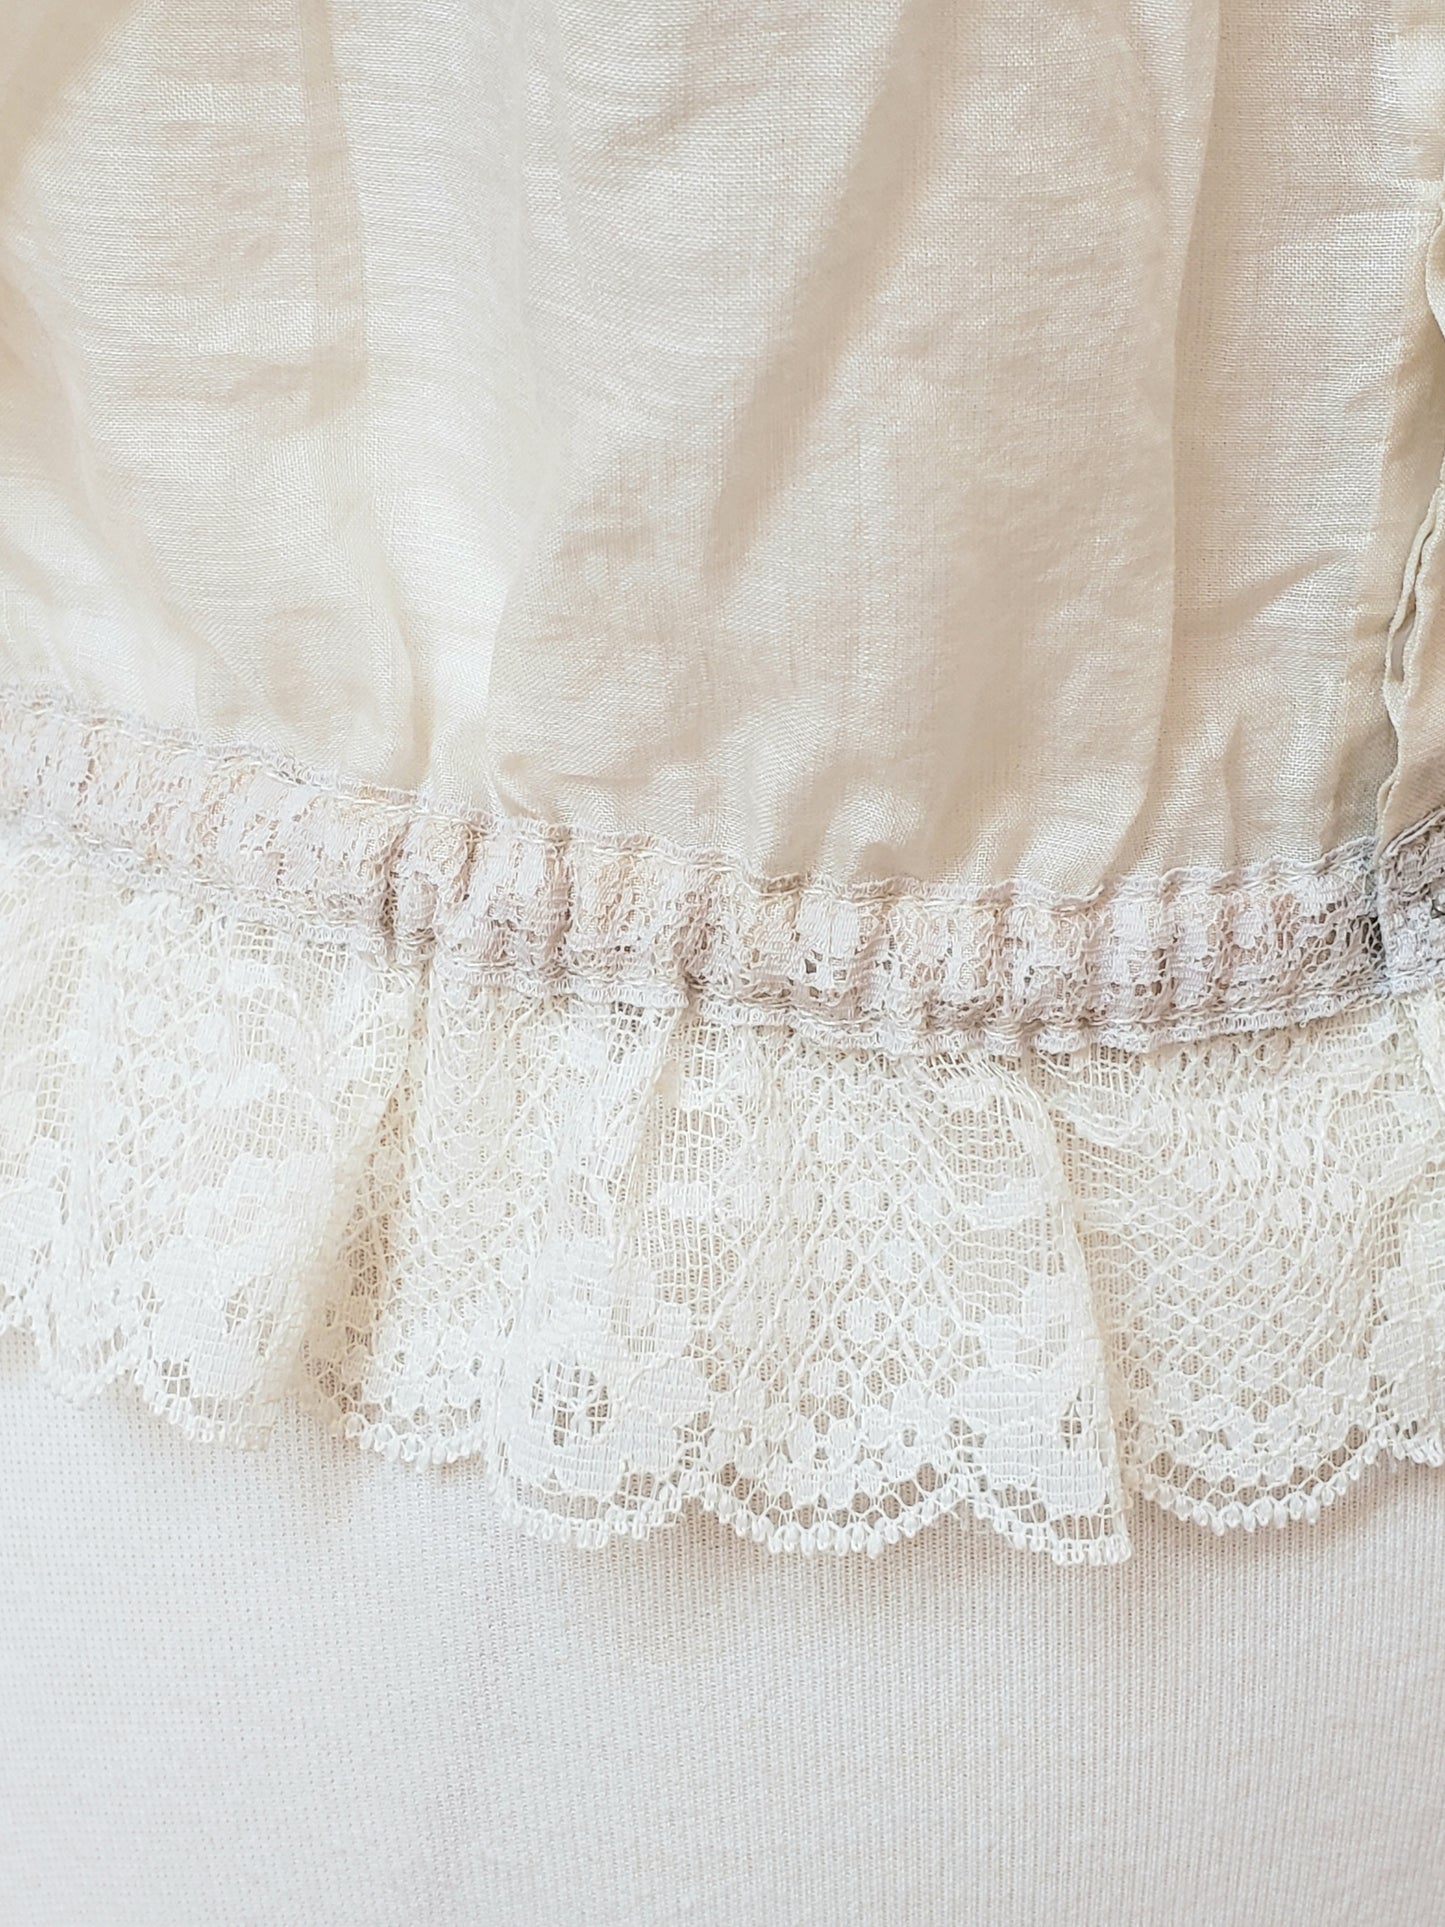 Vintage lace camisole